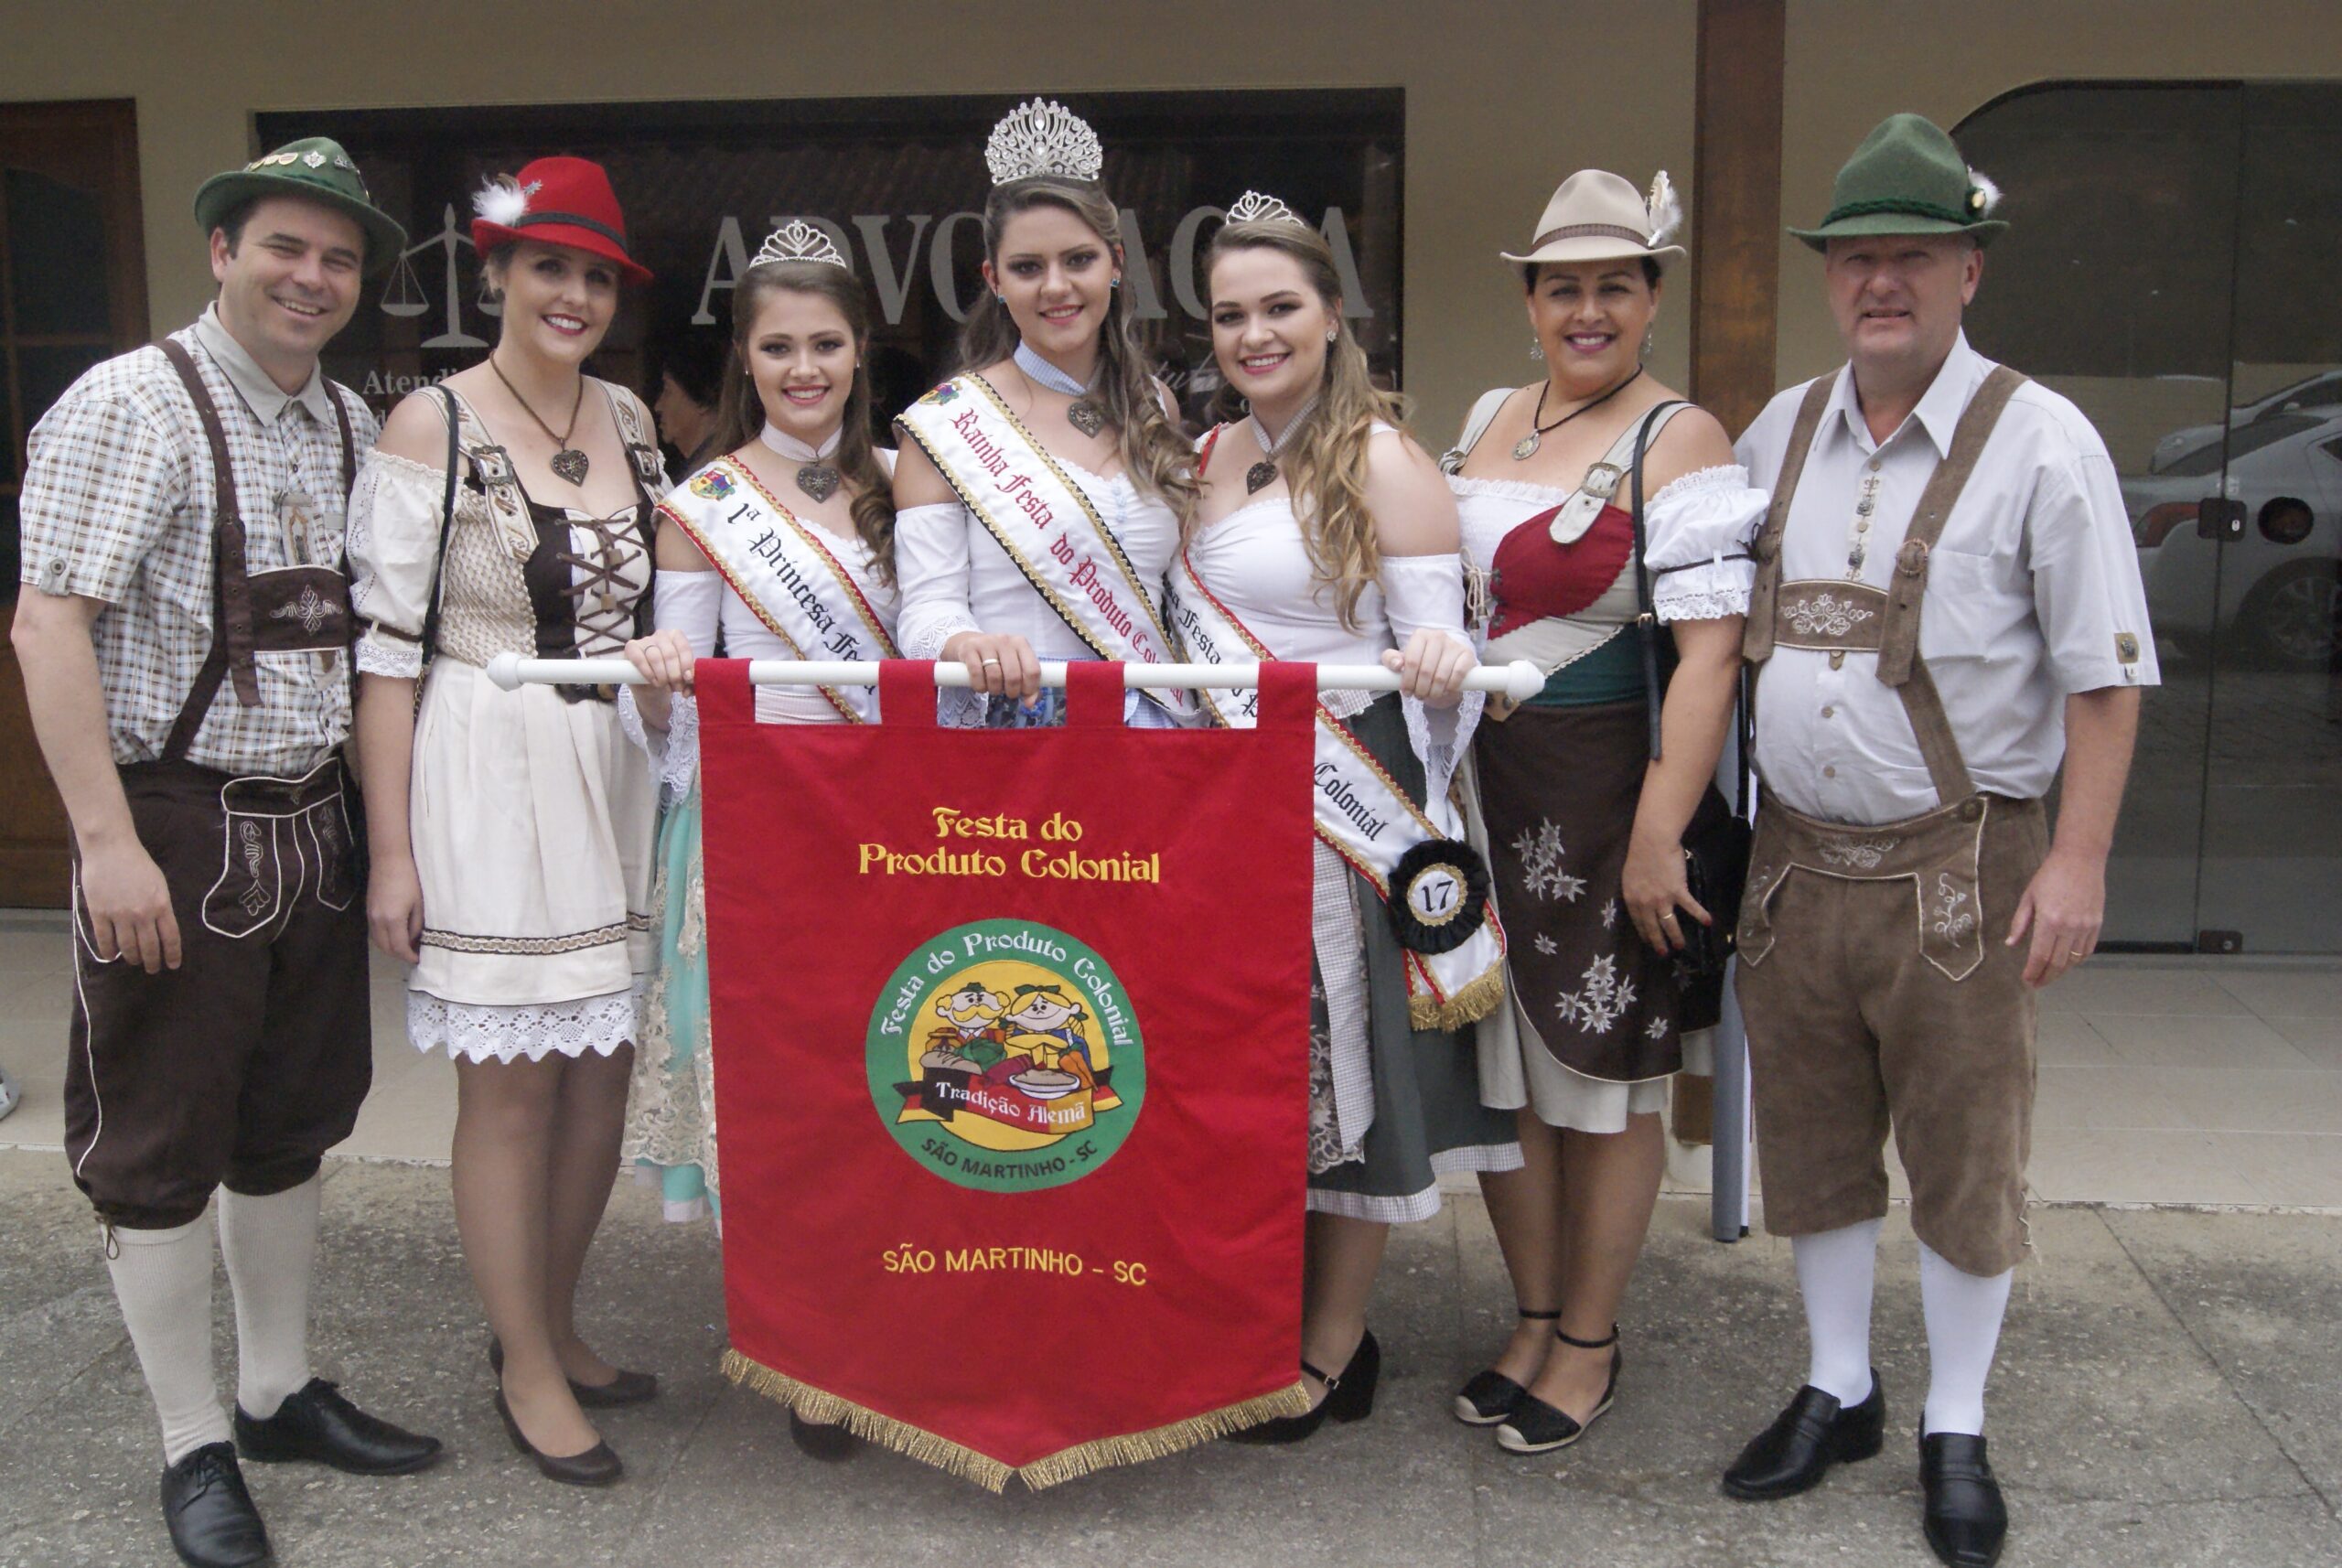 Festa do Produto Colonial acontece de 27 a 29 de outubro em São Martinho, no Sul do Estado.